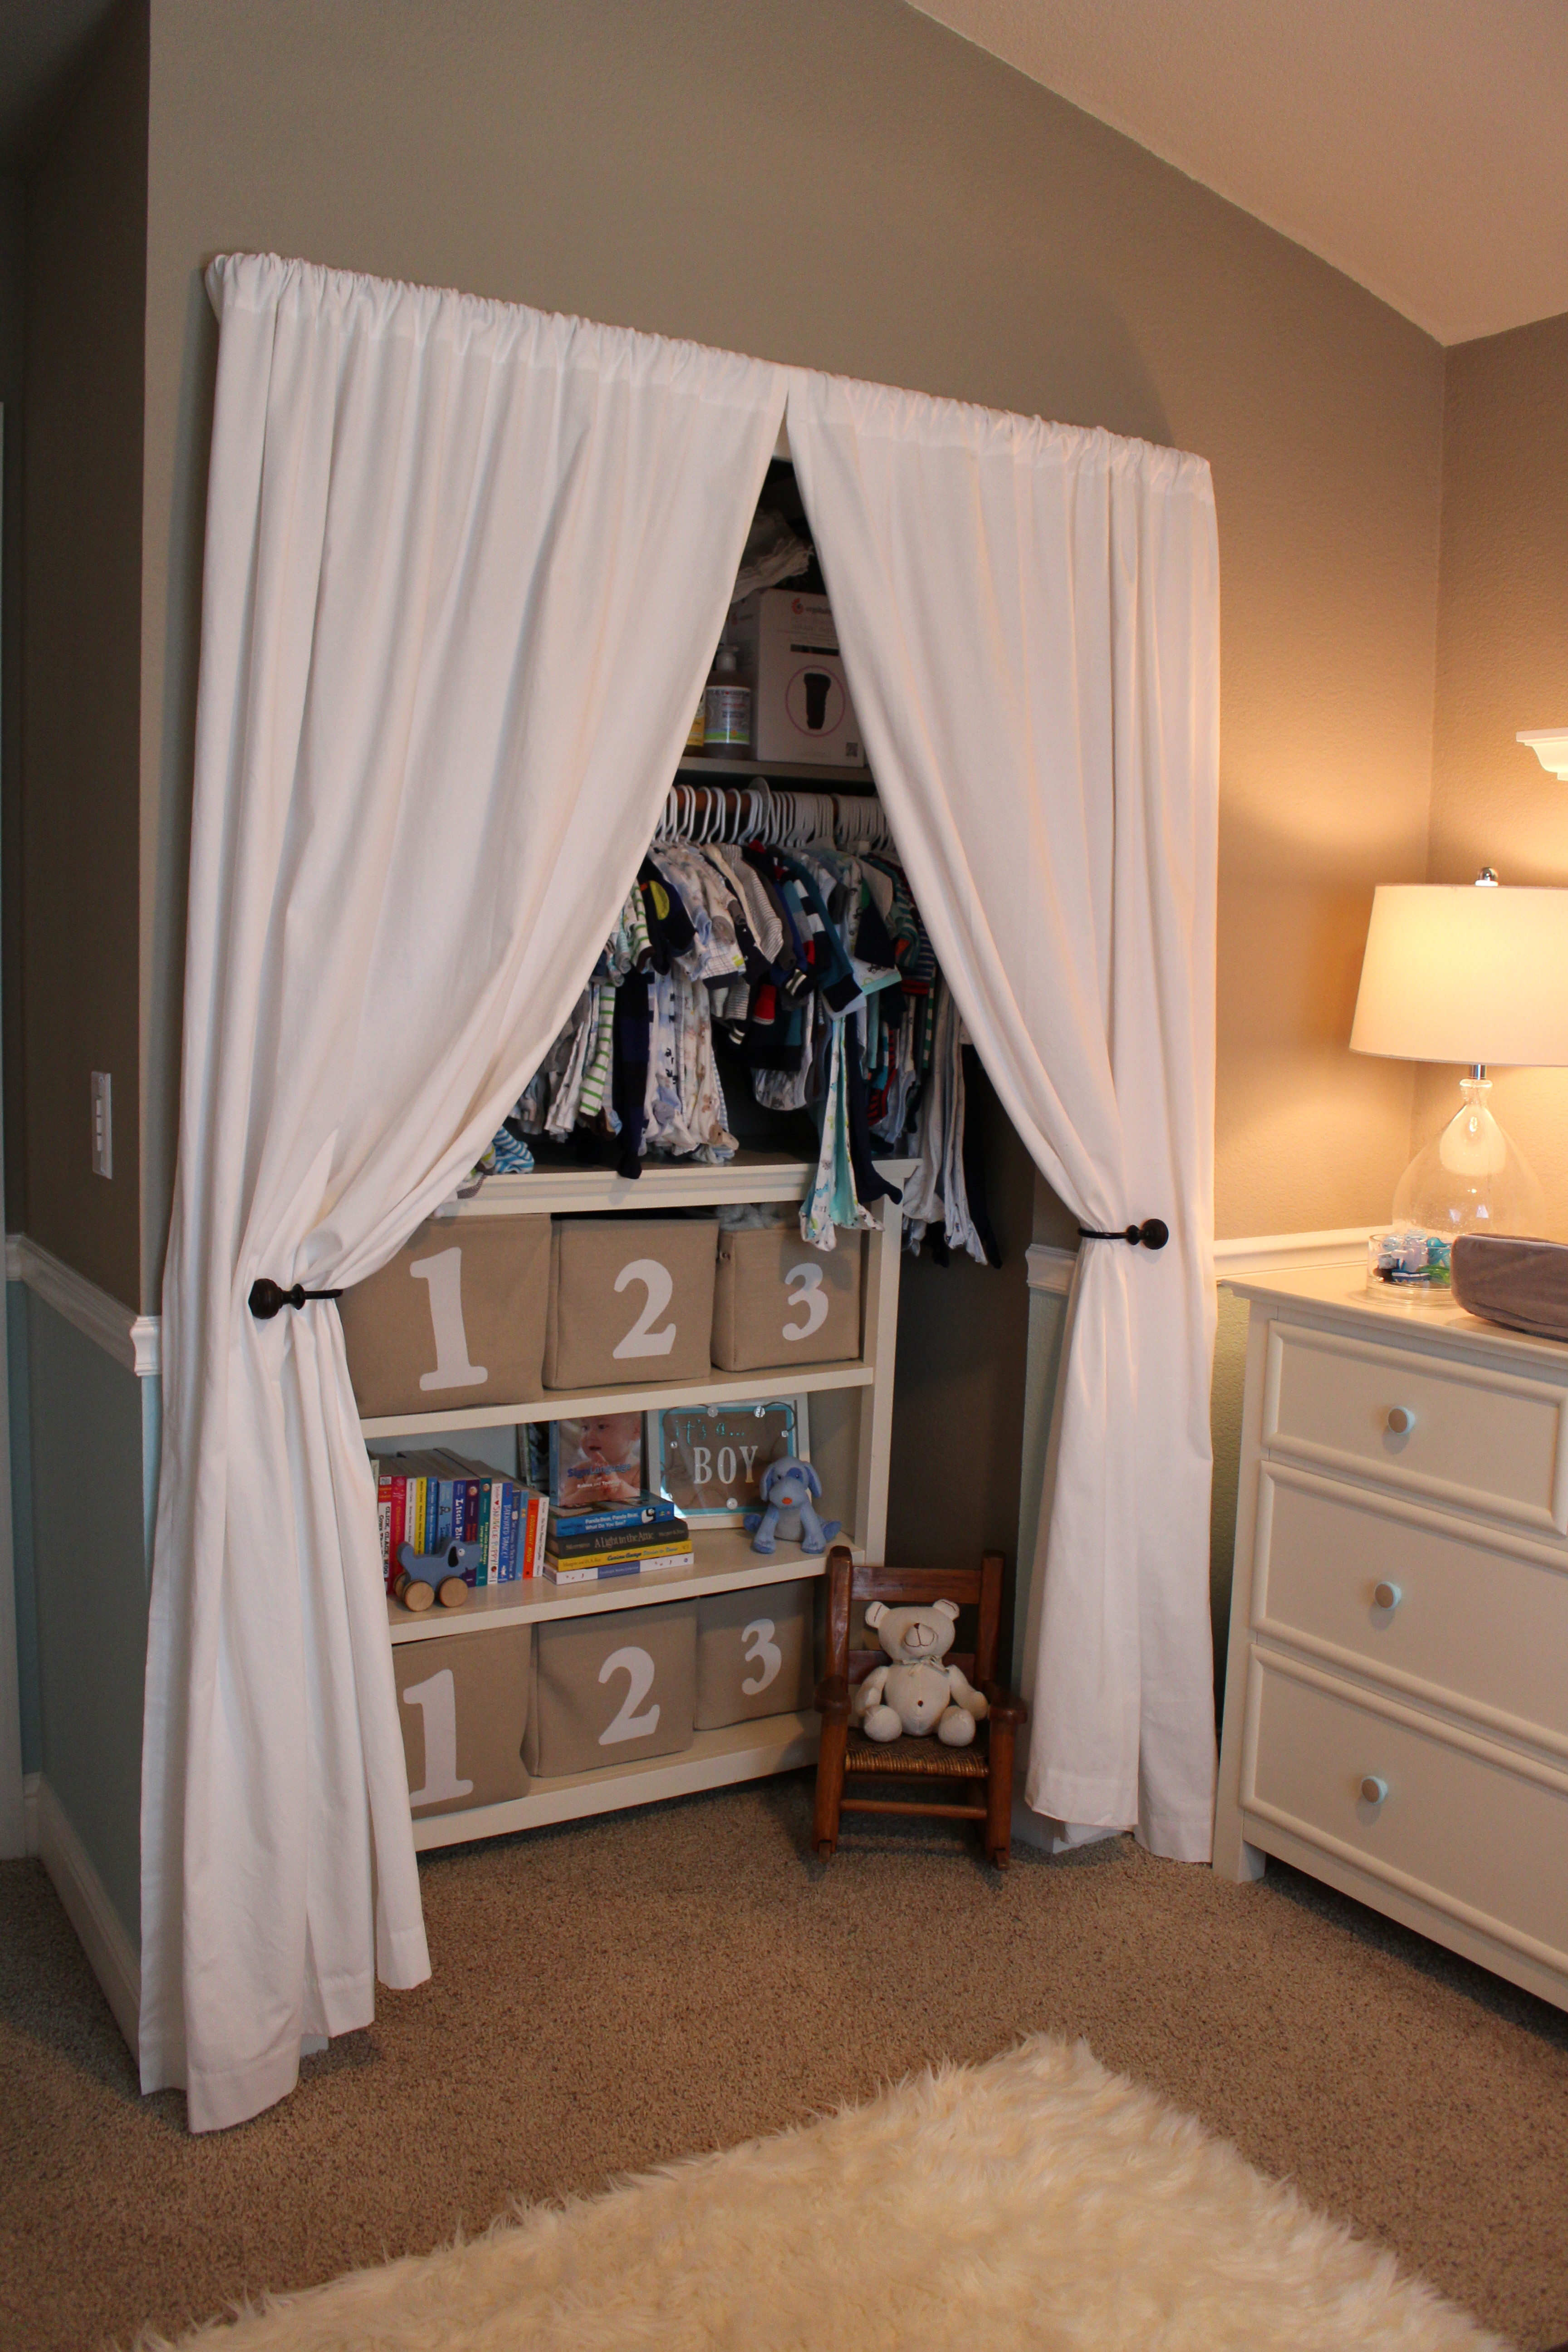 Closet Curtain Design Idea for Nursery